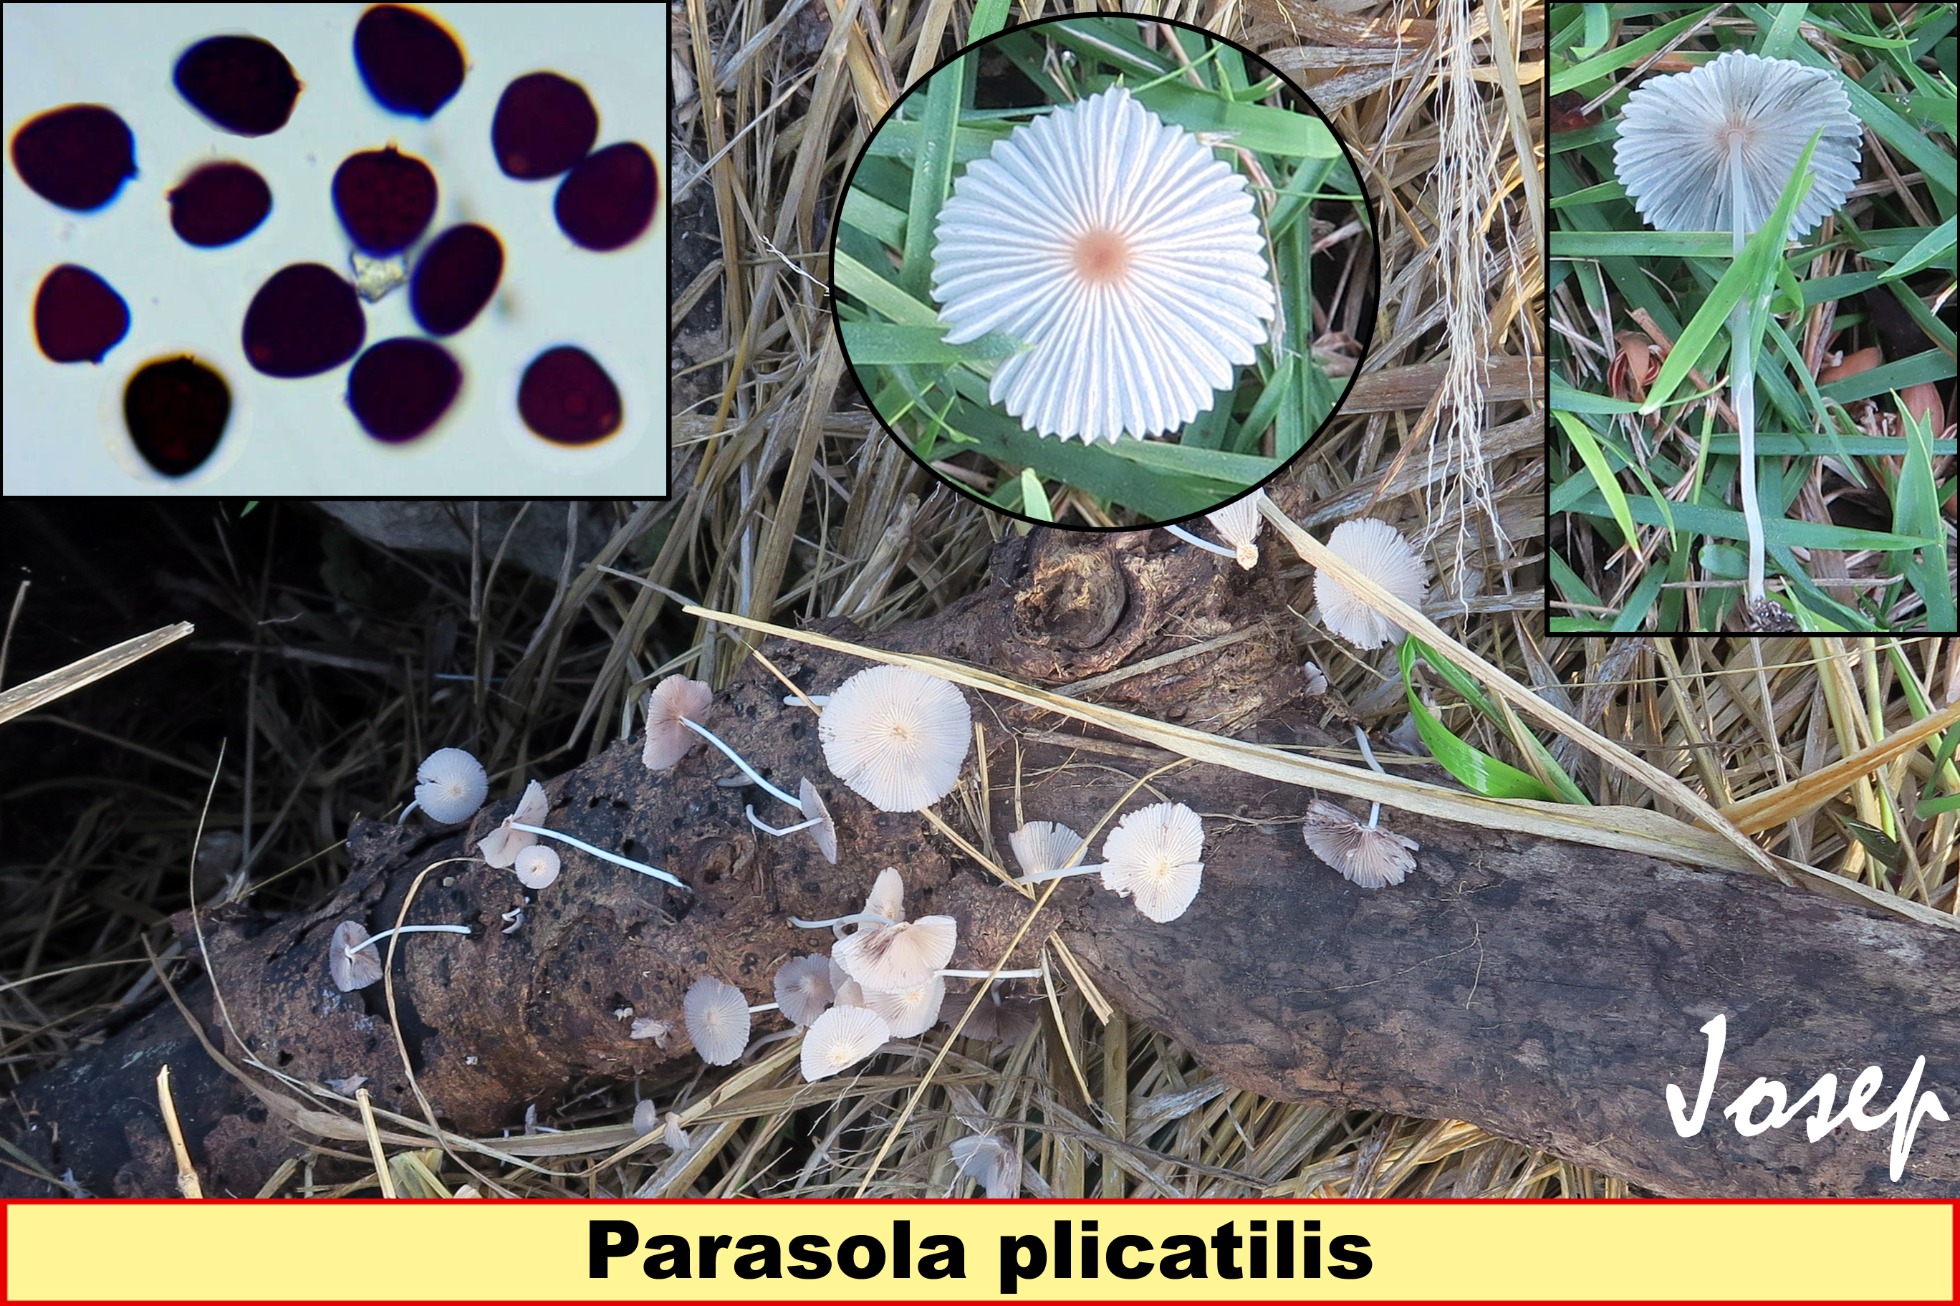 Parasolaplicatilis_2022-07-07.jpg